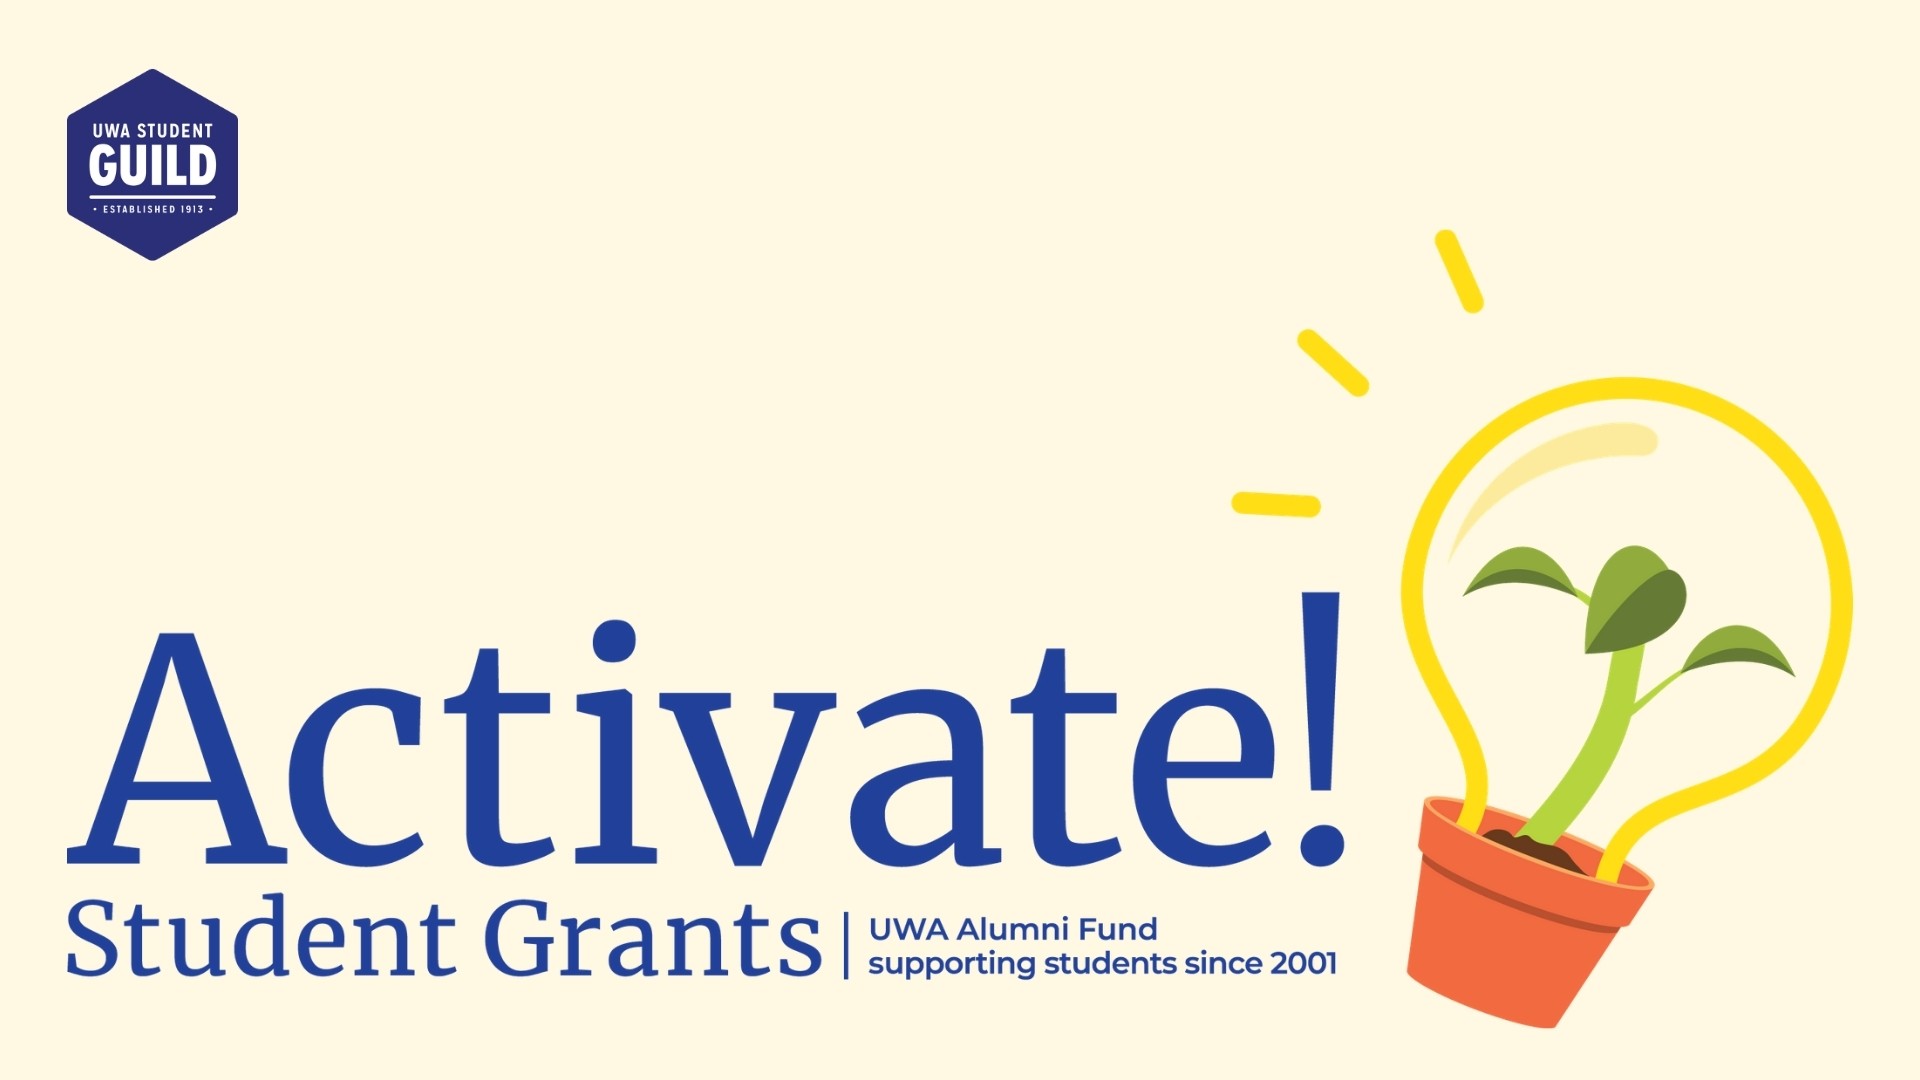 UWA Launches New #39 Activate #39 Student Grants UWA Student Guild